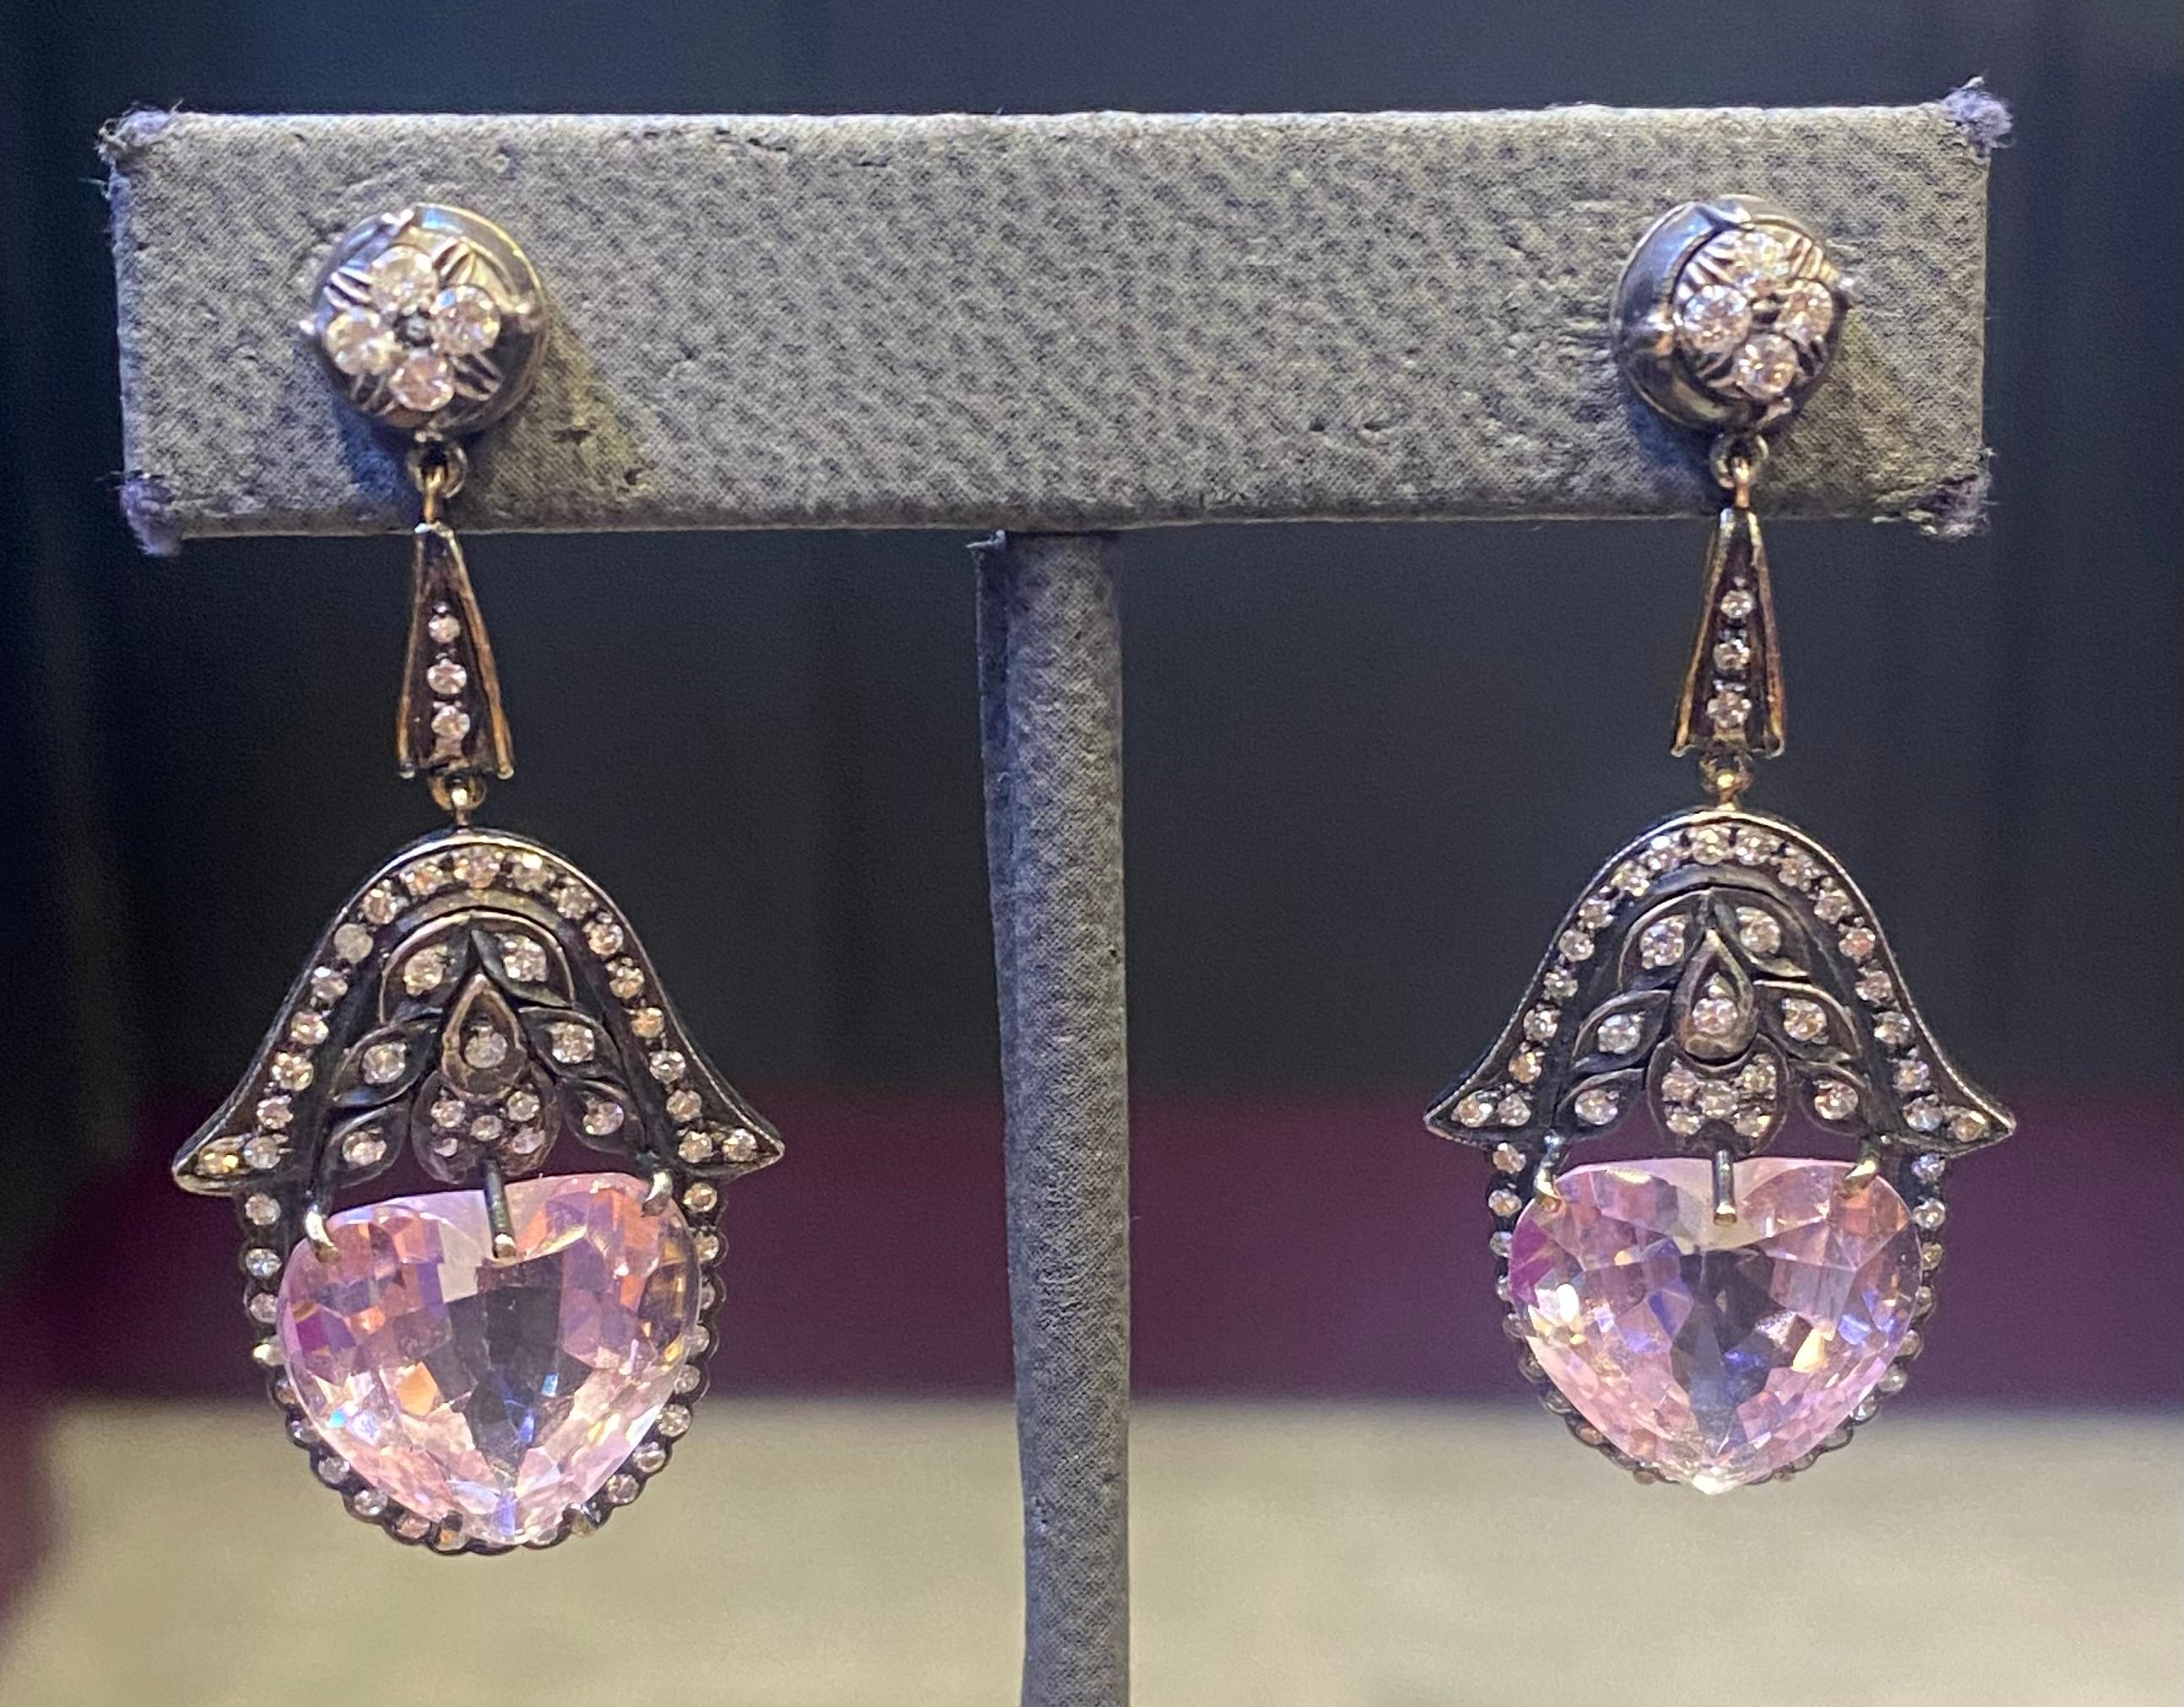 Heart Shape Kunzite & Diamond Earrings.

2 heart shape kunzite set with 118 round cut diamonds set in 18 karat yellow gold & silver.

Measurements: 2